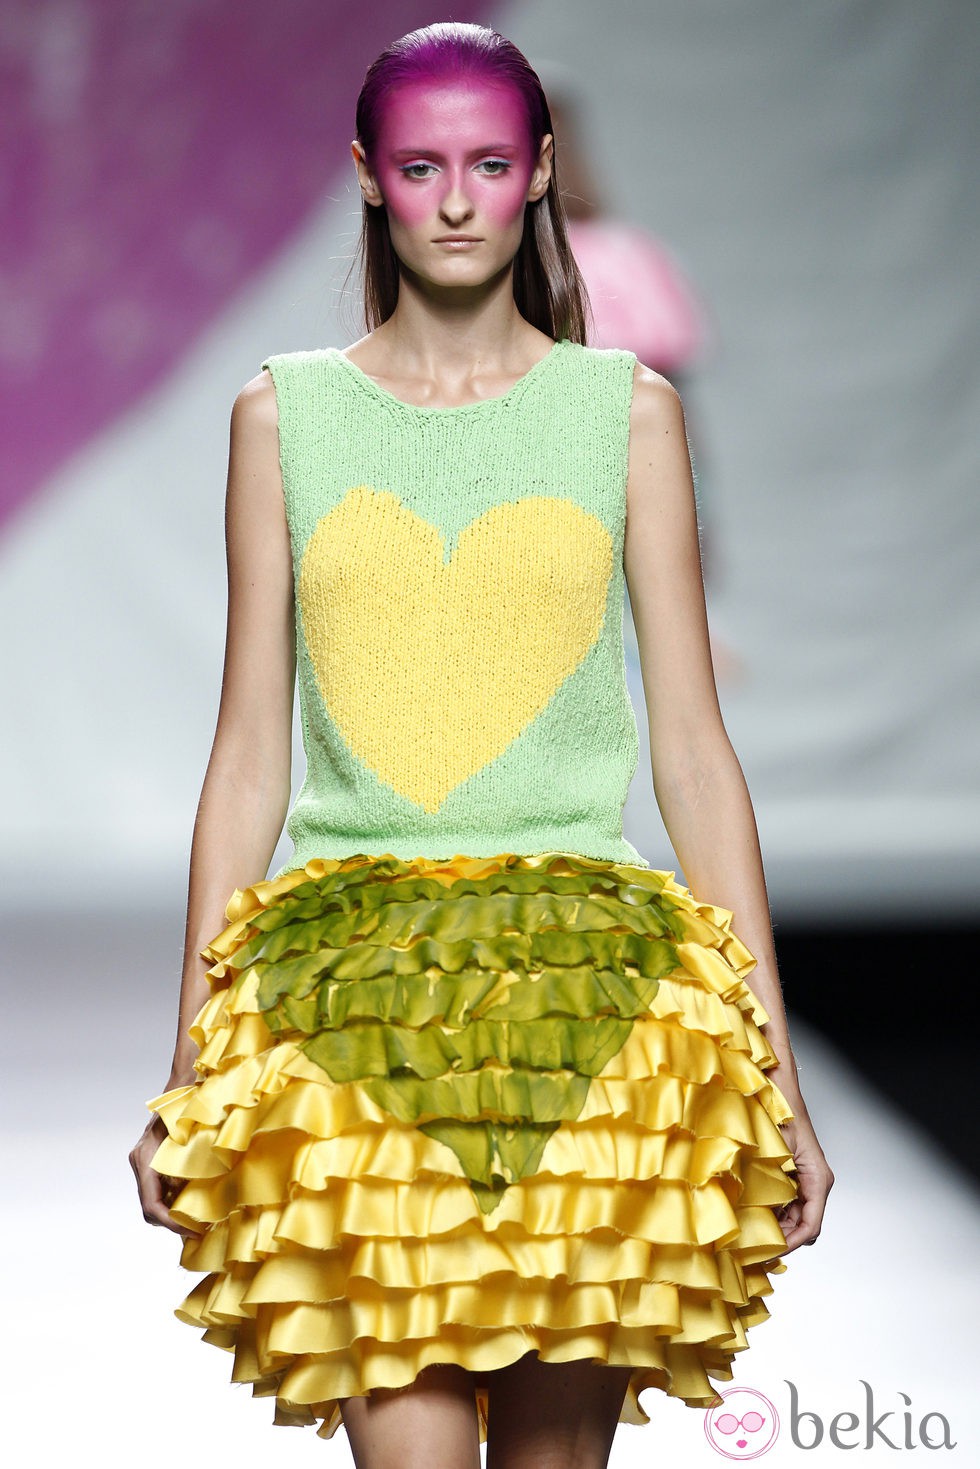 Falda de flecos de la colección primavera/verano 2014 de Ágatha Ruiz de la Prada en Madrid Fashion Week